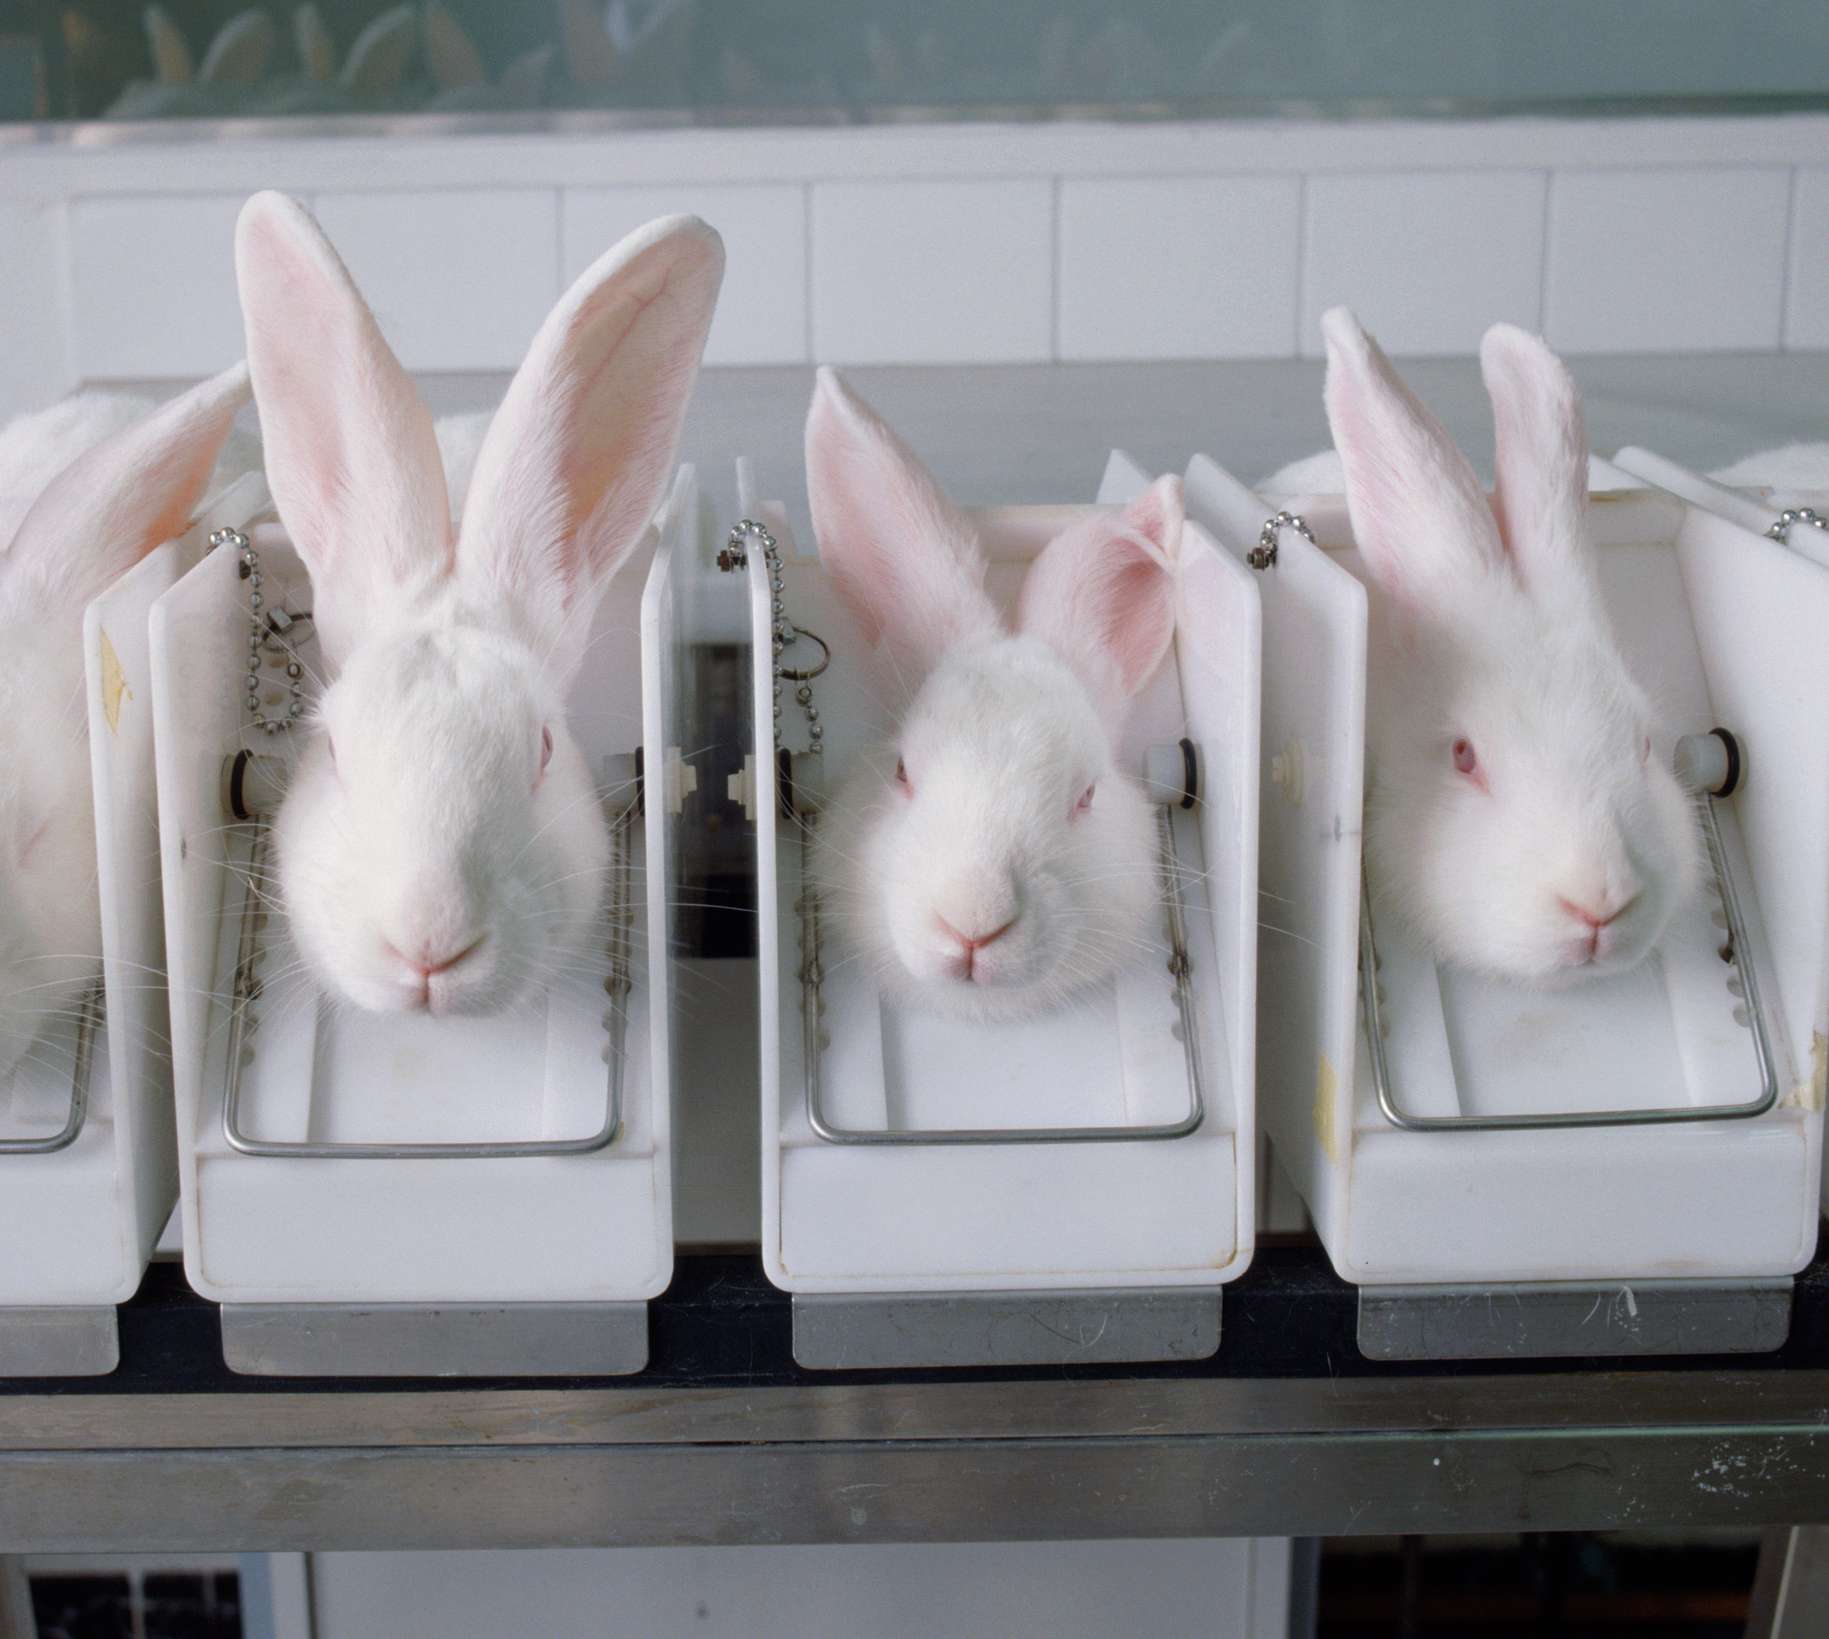 Conejos en un laboratorio de pruebas de cosméticos